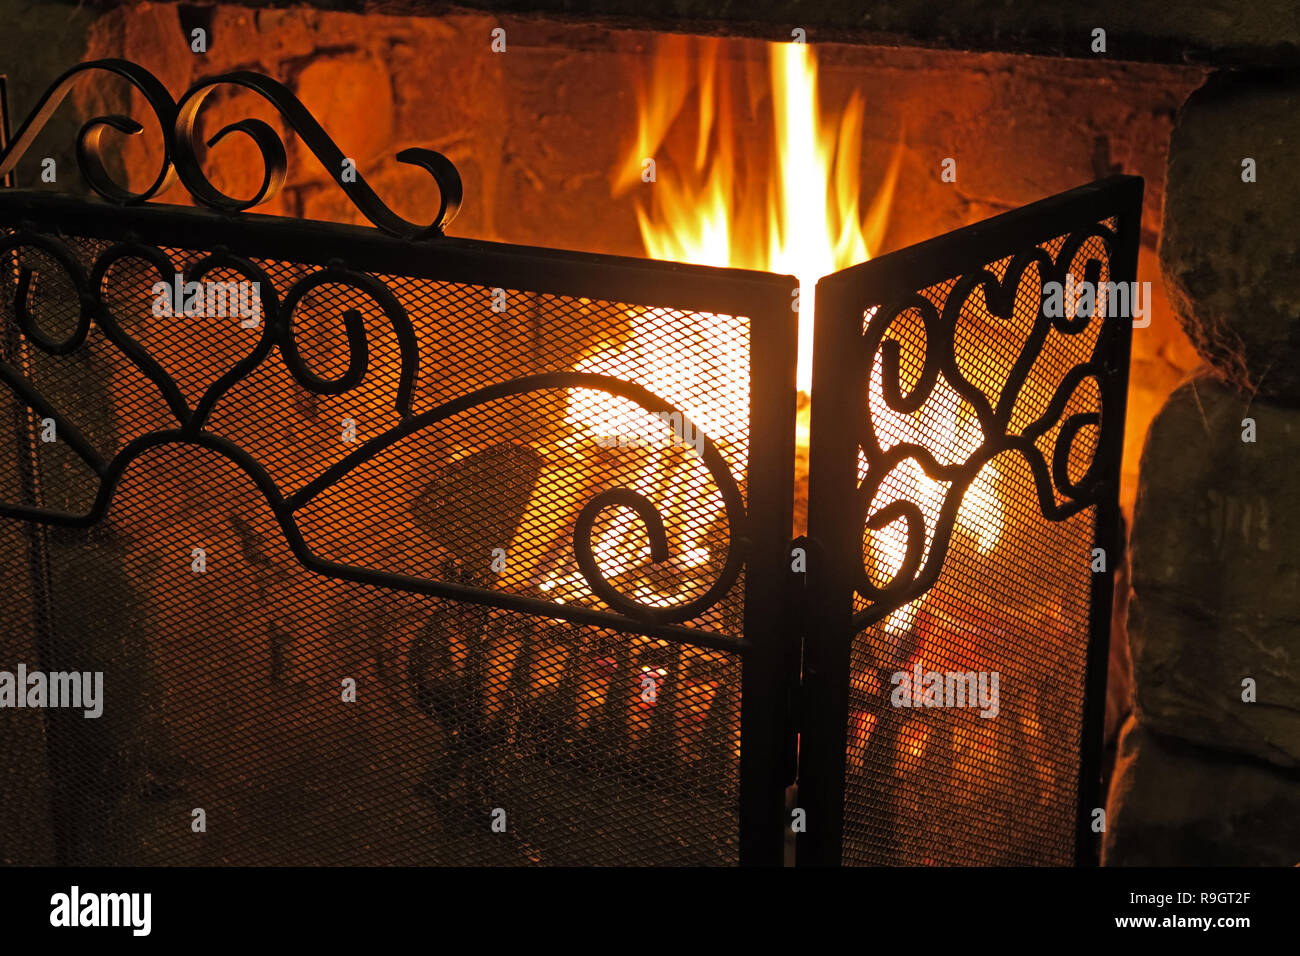 Las llamas de un incendio real, en una reja de hierro fundido, tiempo de invierno, precioso naranja cálido resplandor Foto de stock